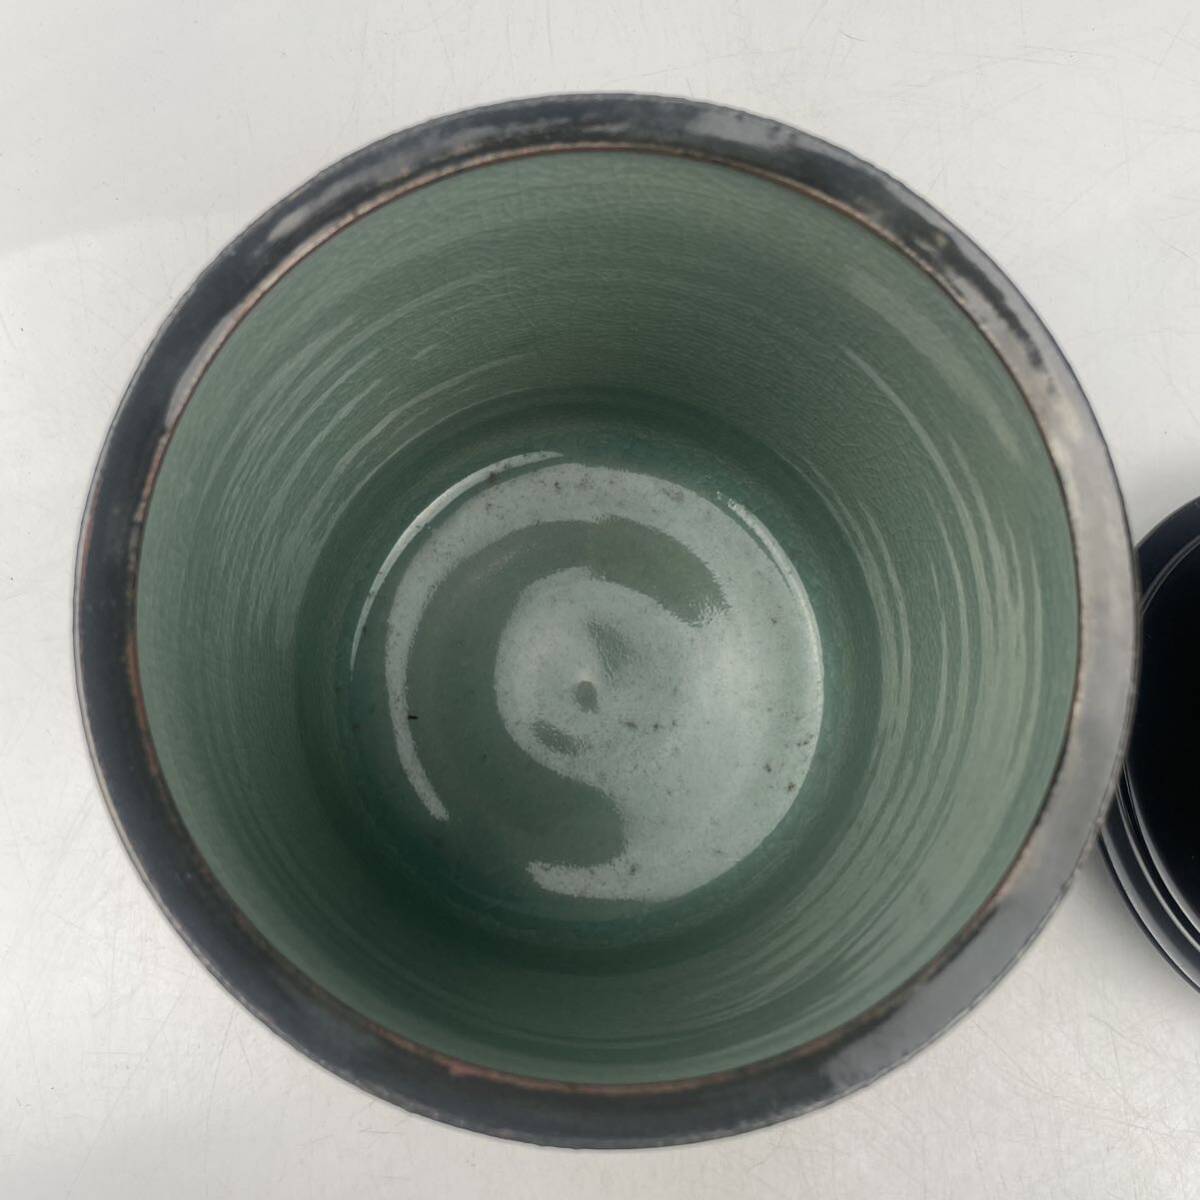 . море Gou (. корень .) Goryeo селадон белый .. сосуд для воды для чайной церемонии вместе коробка *. есть / Корея человек национальное достояние искусный мастер чайная посуда . чайная посуда зеленый чай орнамент.1837